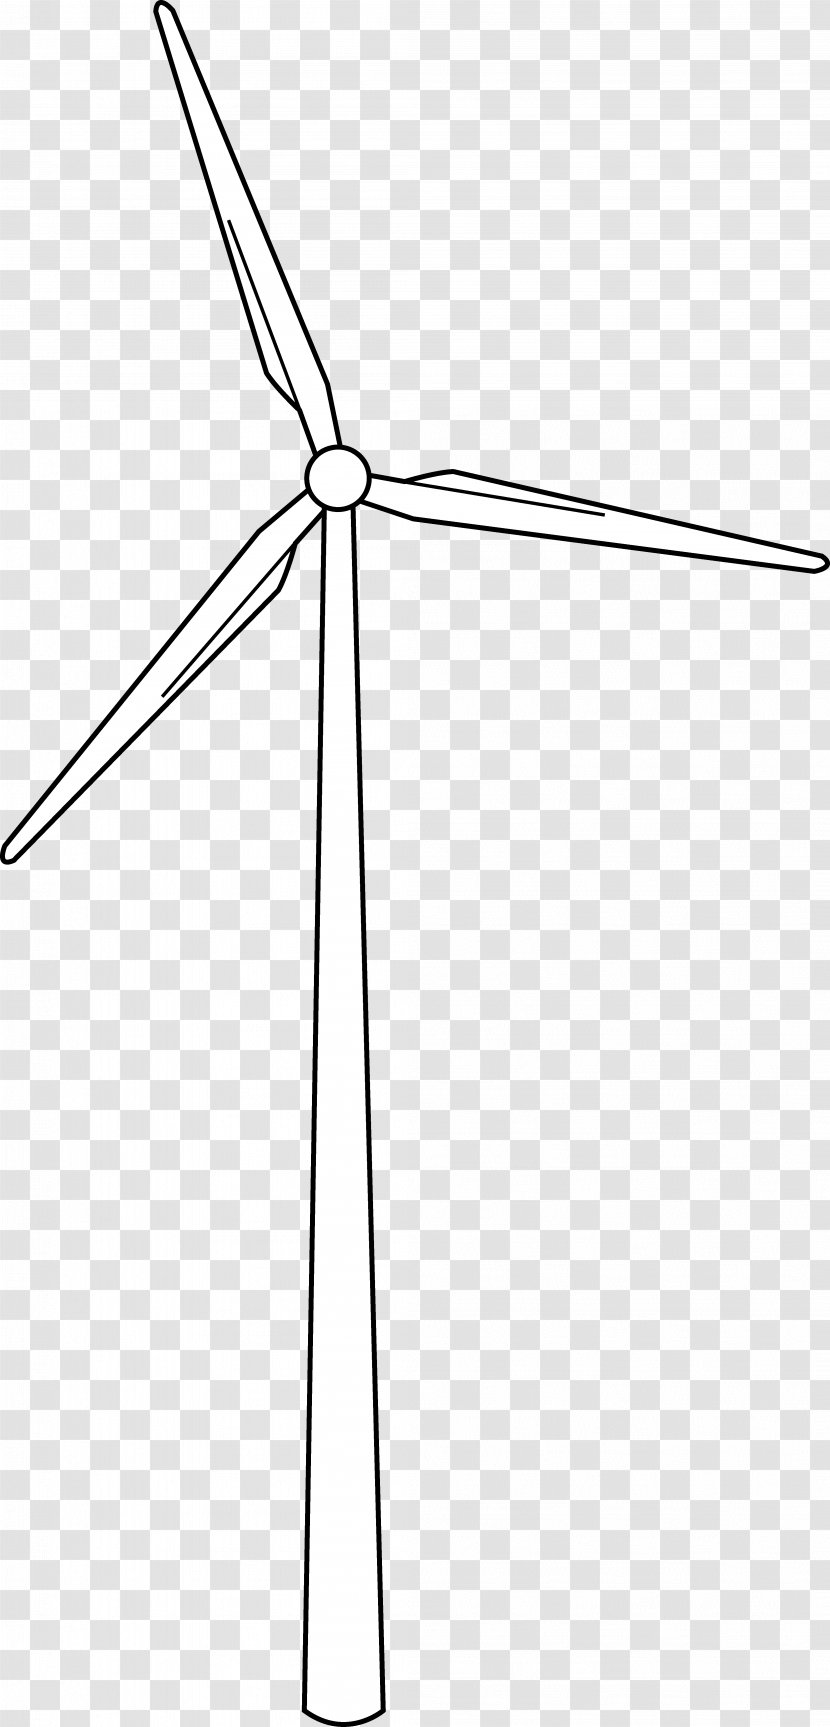 Wind Farm Turbine Power Drawing - Electronics - Windmill Transparent PNG